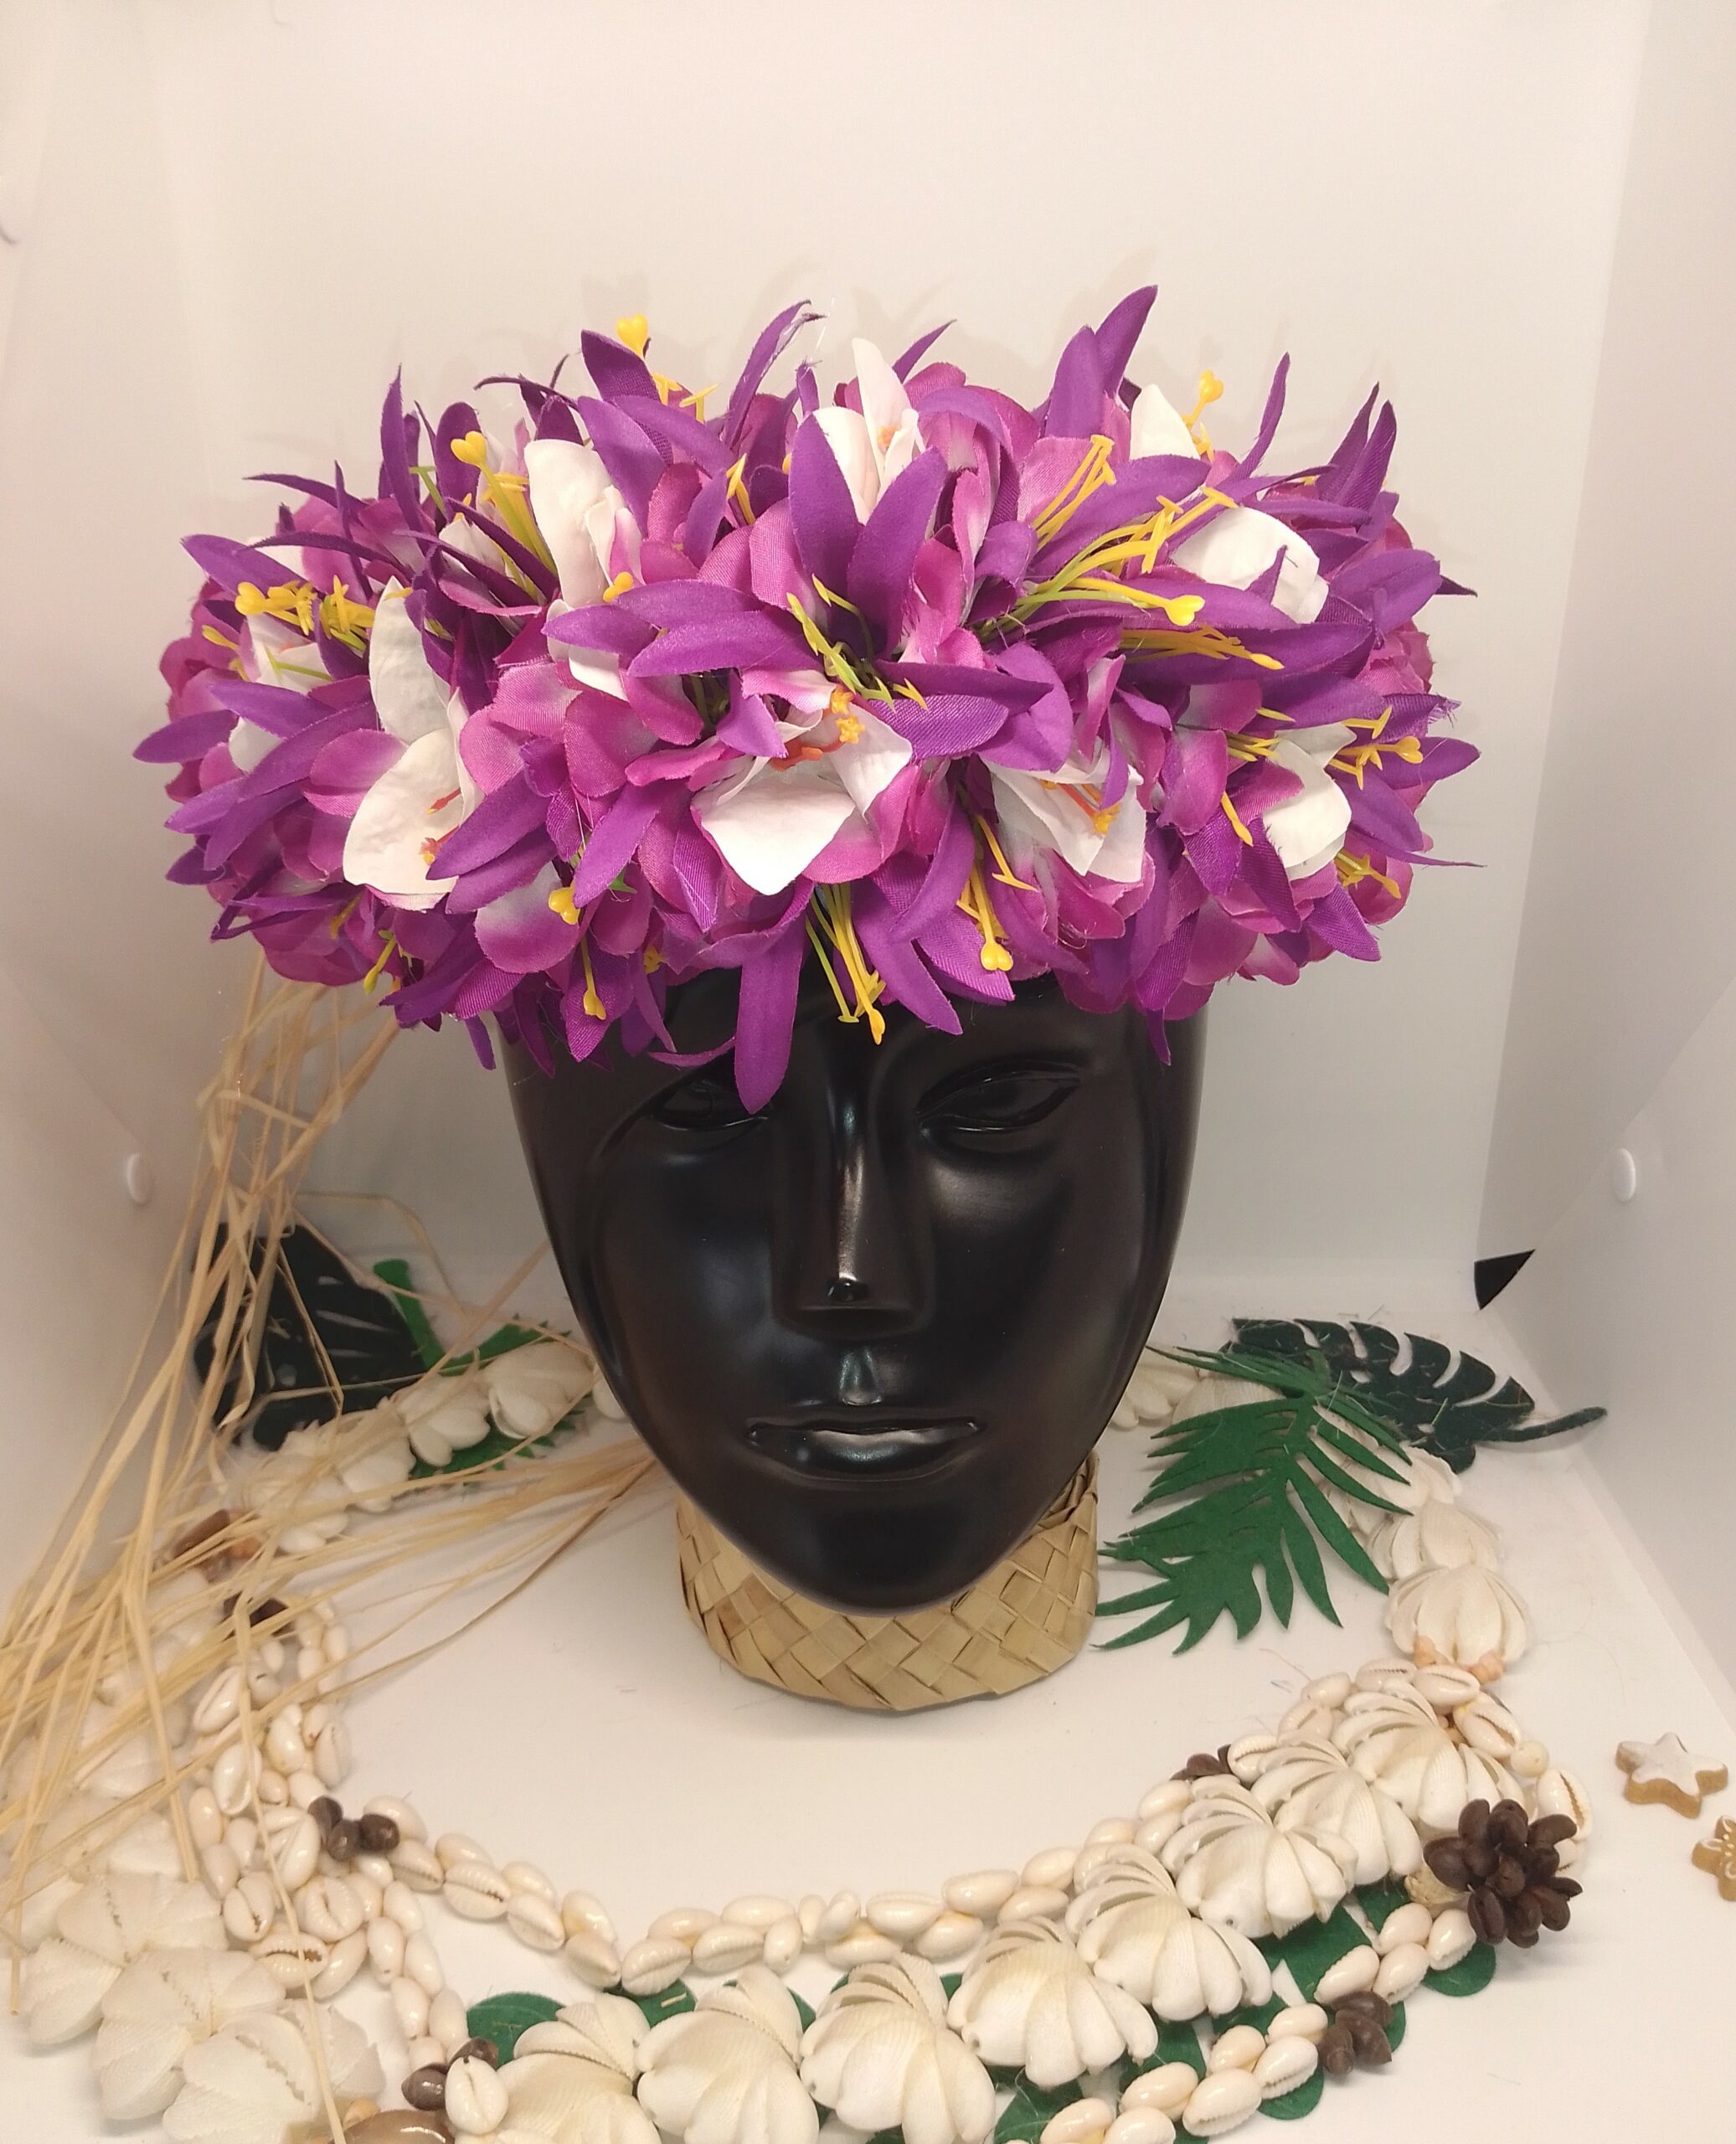 couronne de tête violette de fleurs tahiti permanentes avec bougainvilliers et lys élancés fait main by Vaite.e.Tiare créations